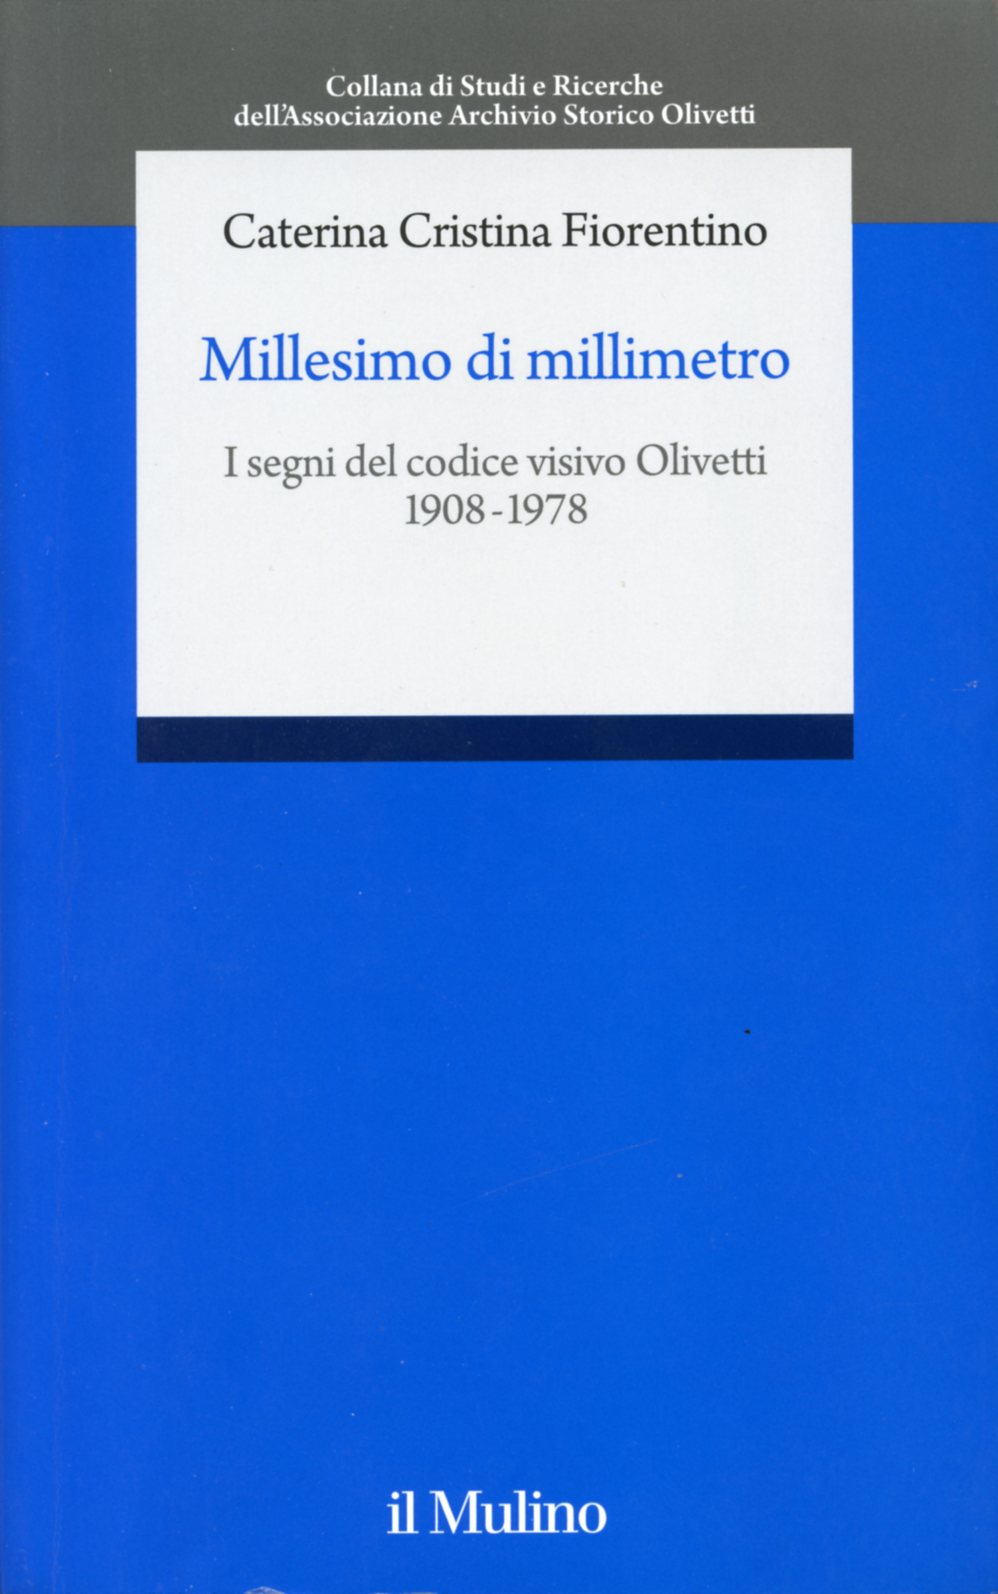 Millesimo di millimetro. I segni del codice visivo Olivetti 1908-1978